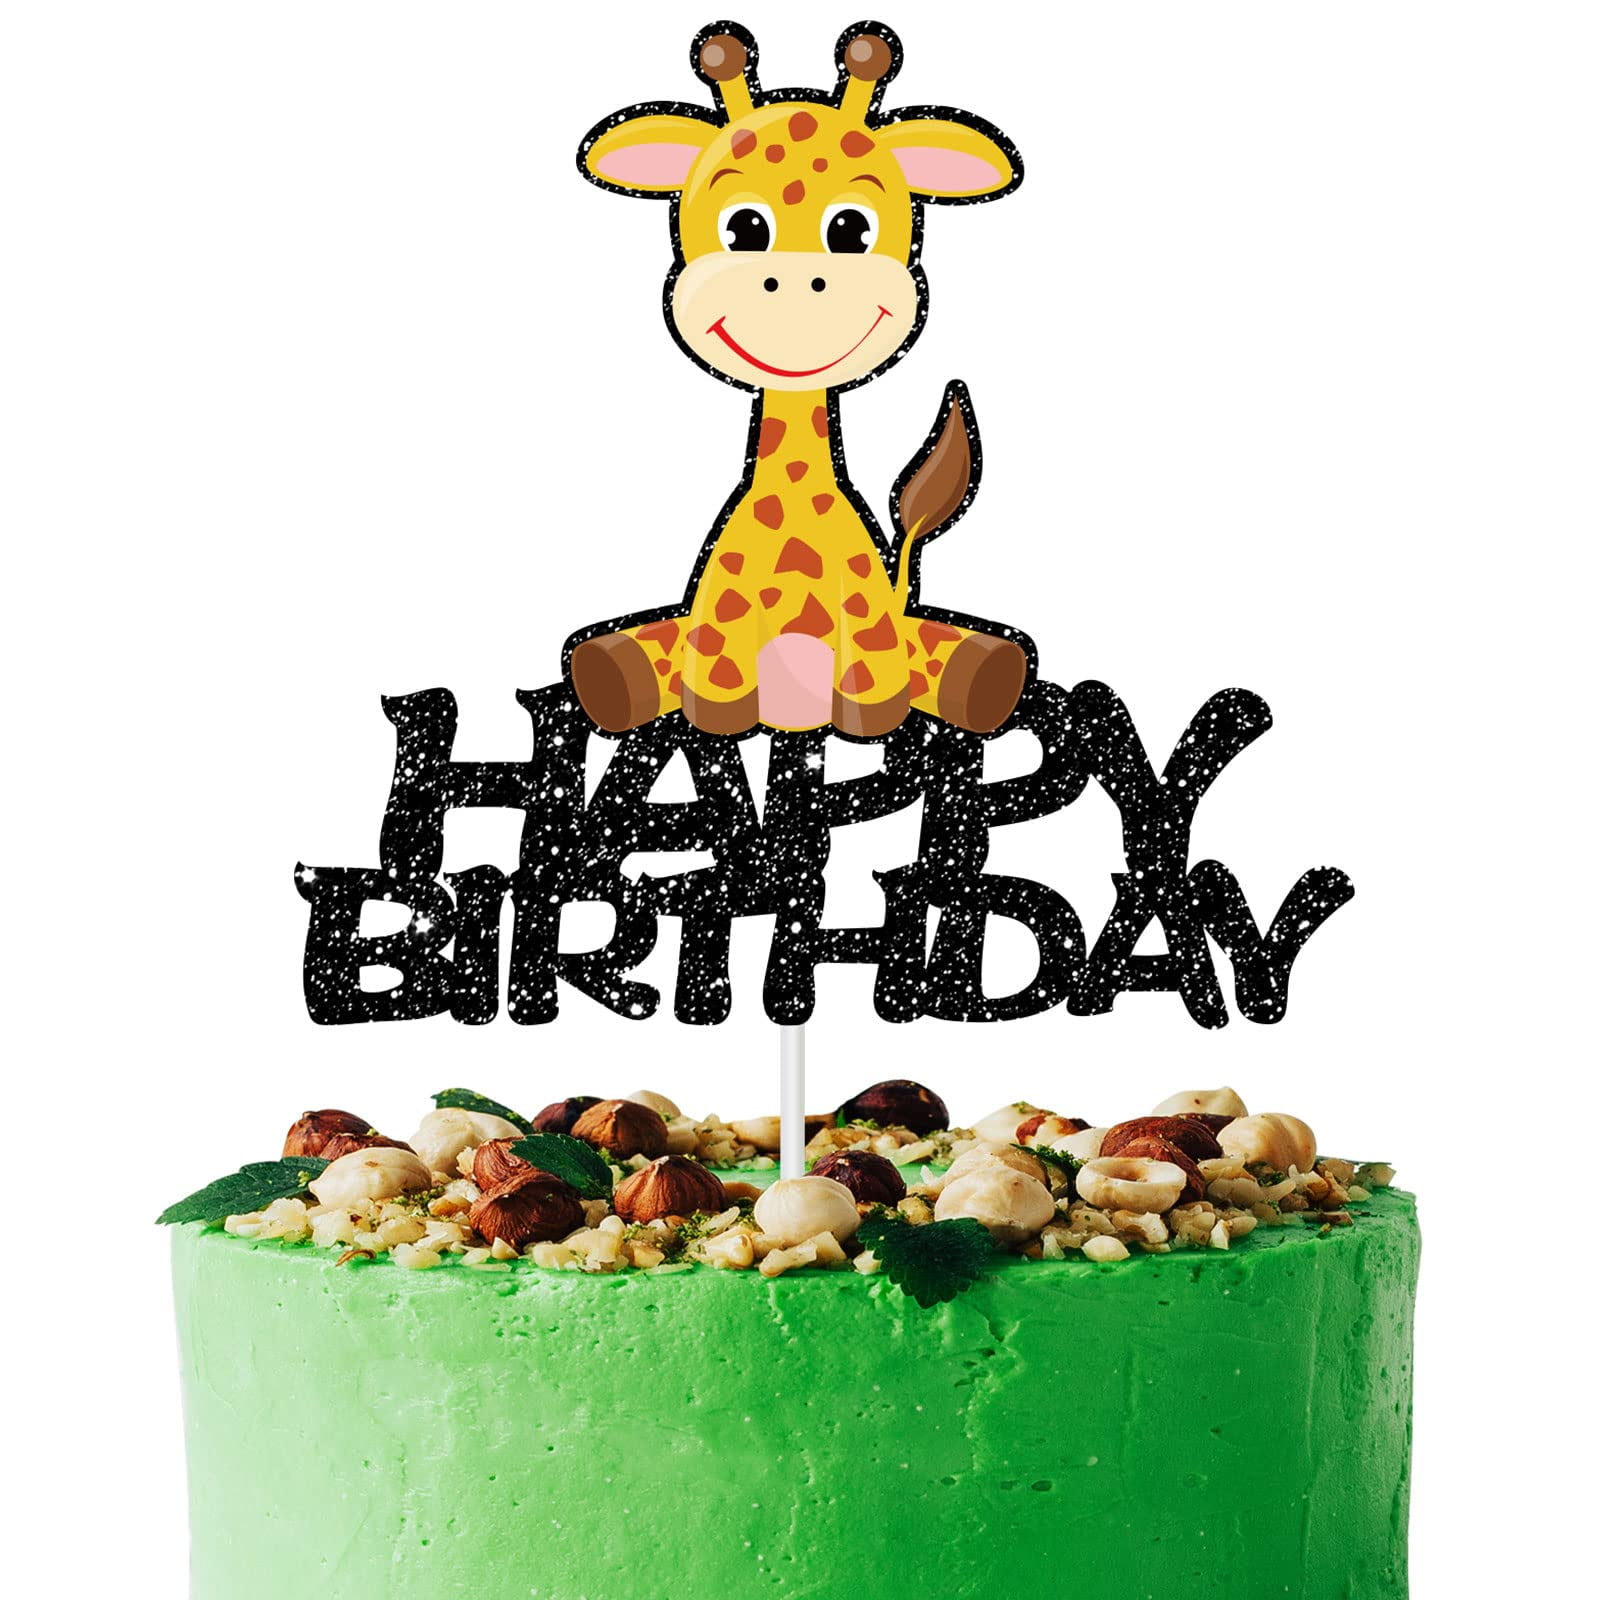 Giraffe and Koala Cake Topper - My Custom Cake Topper